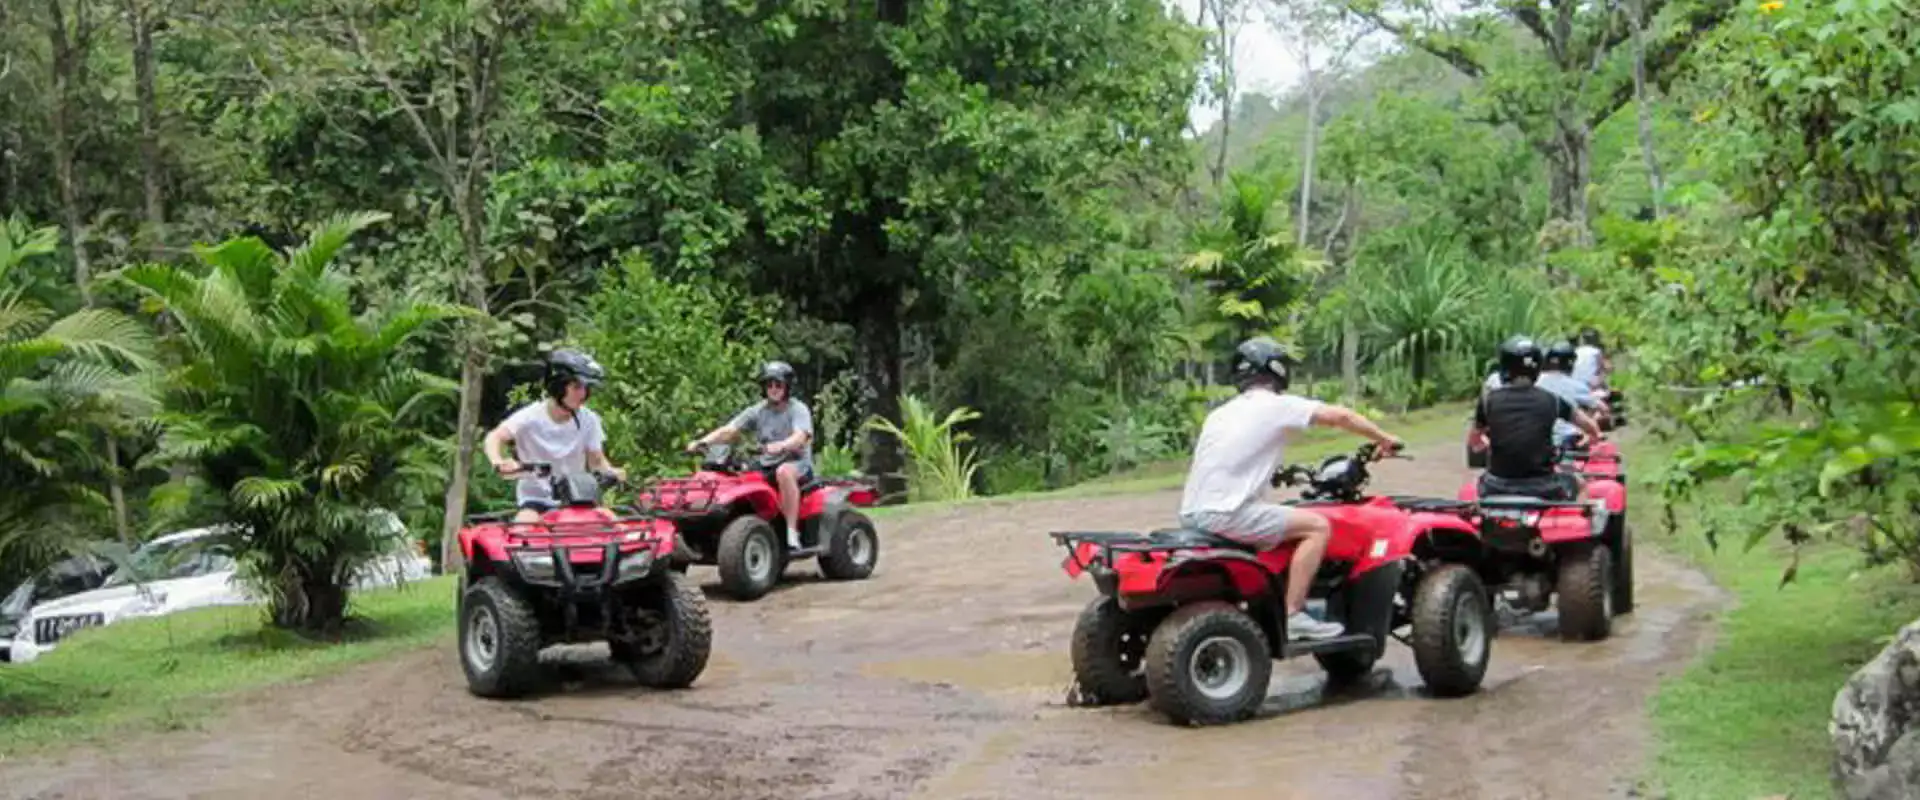 ATV Tour Manuel Antonio | Costa Rica